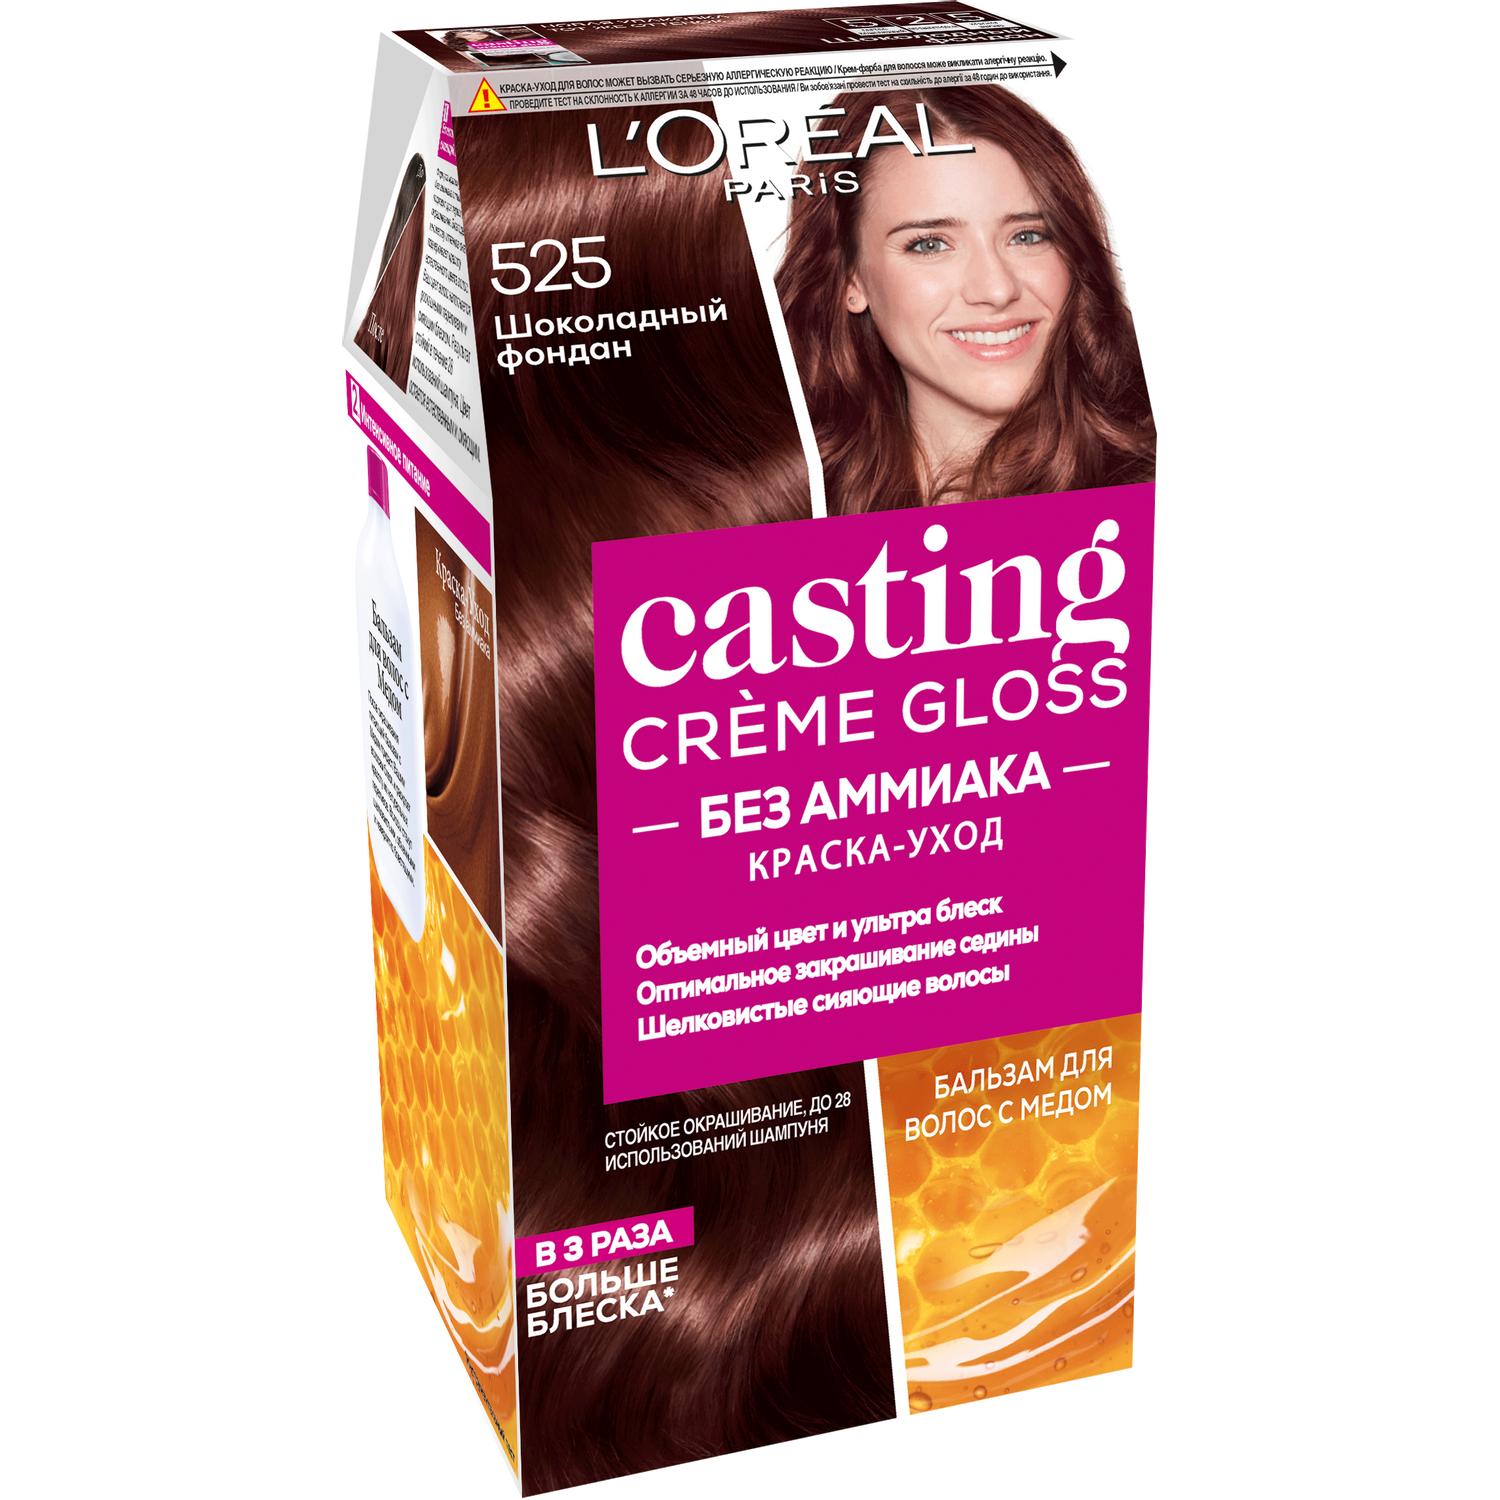 Краска для волос L'Oreal Paris Casting Creme Gloss 525 Шоколадный фондан краска для волос l oreal paris casting creme gloss 302 ледяной фраппучино